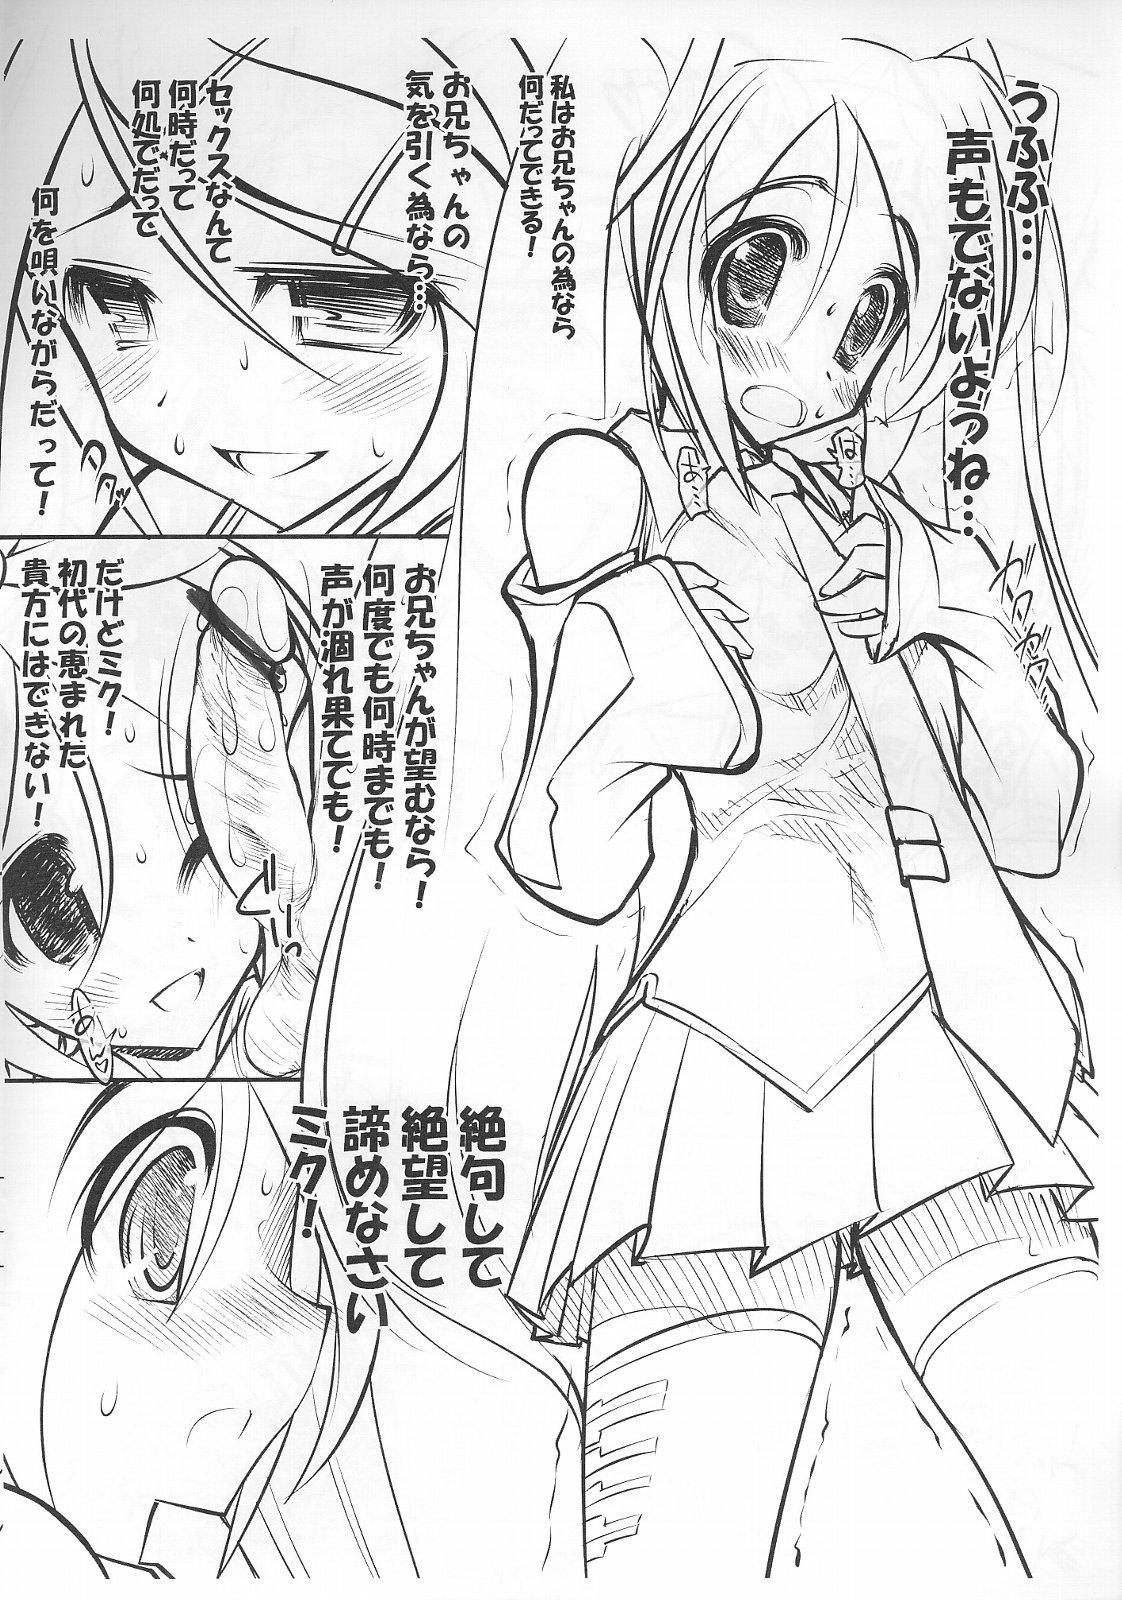 Moms Hatsune Miku no Shitto - Vocaloid Newbie - Page 4